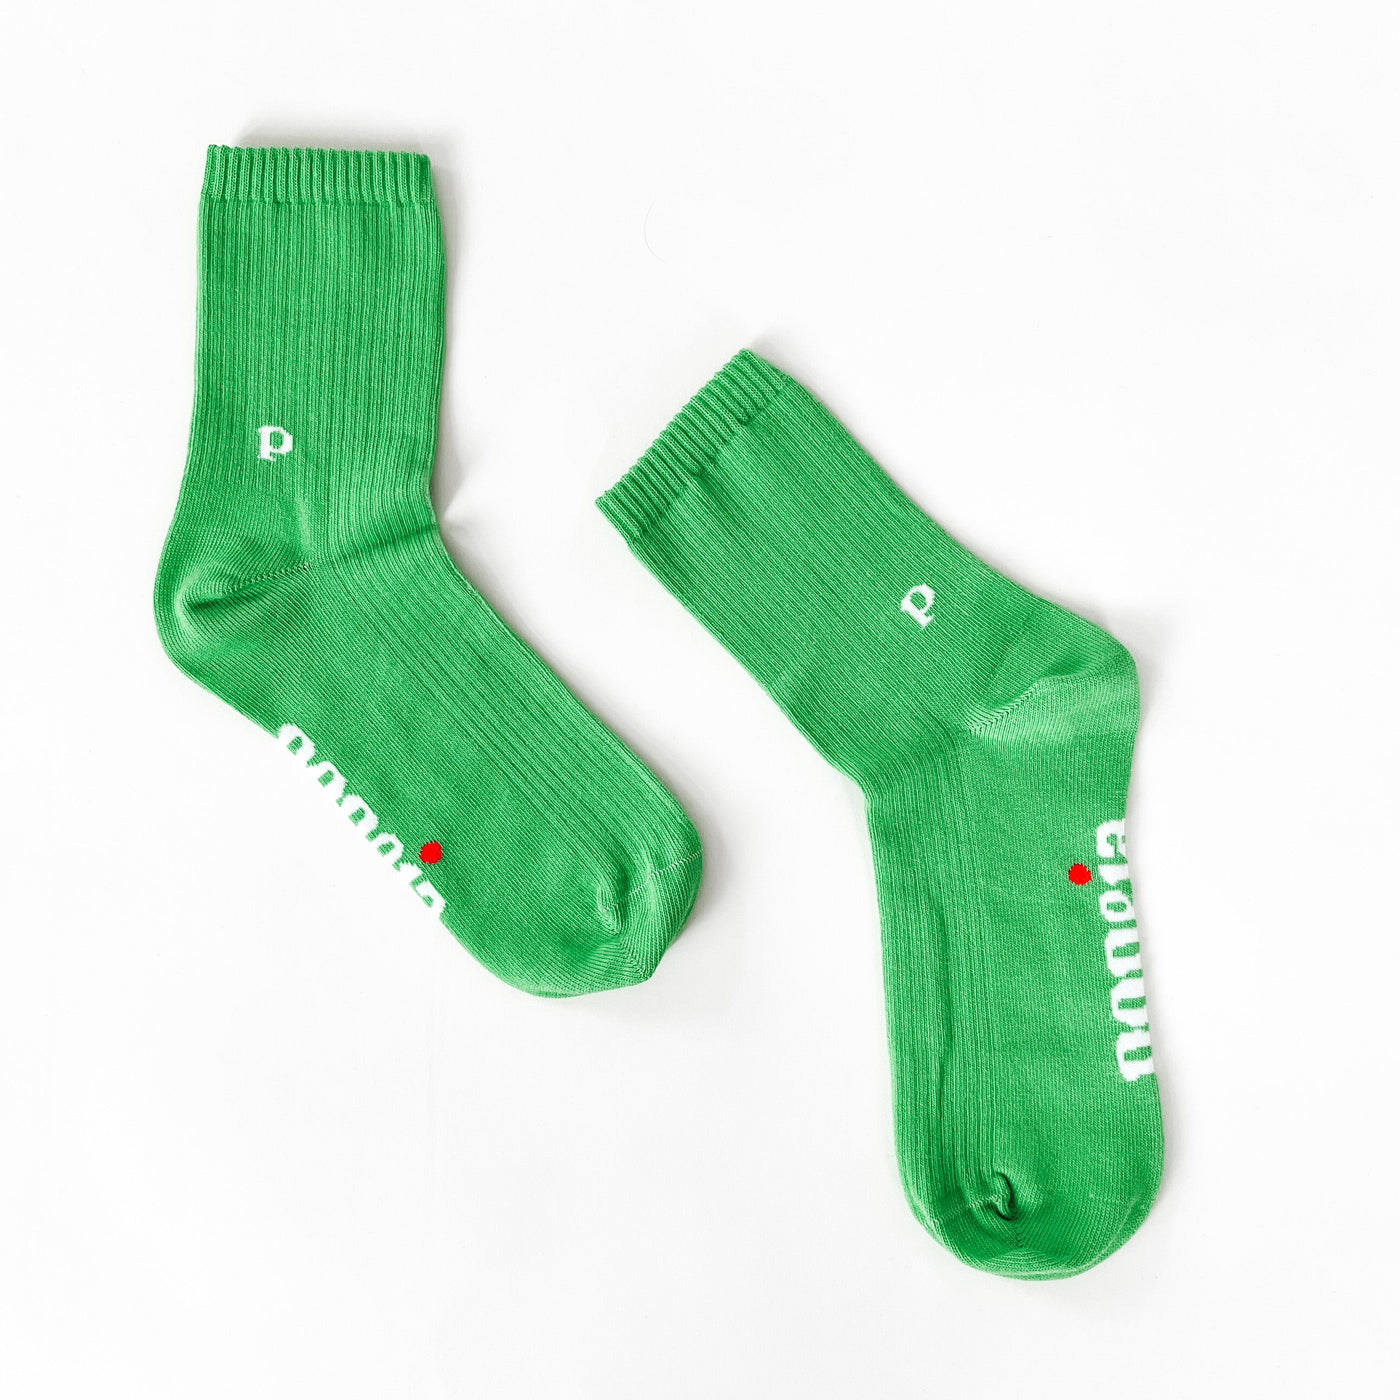 The Casual - Socken aus Bio-Baumwolle in Grün